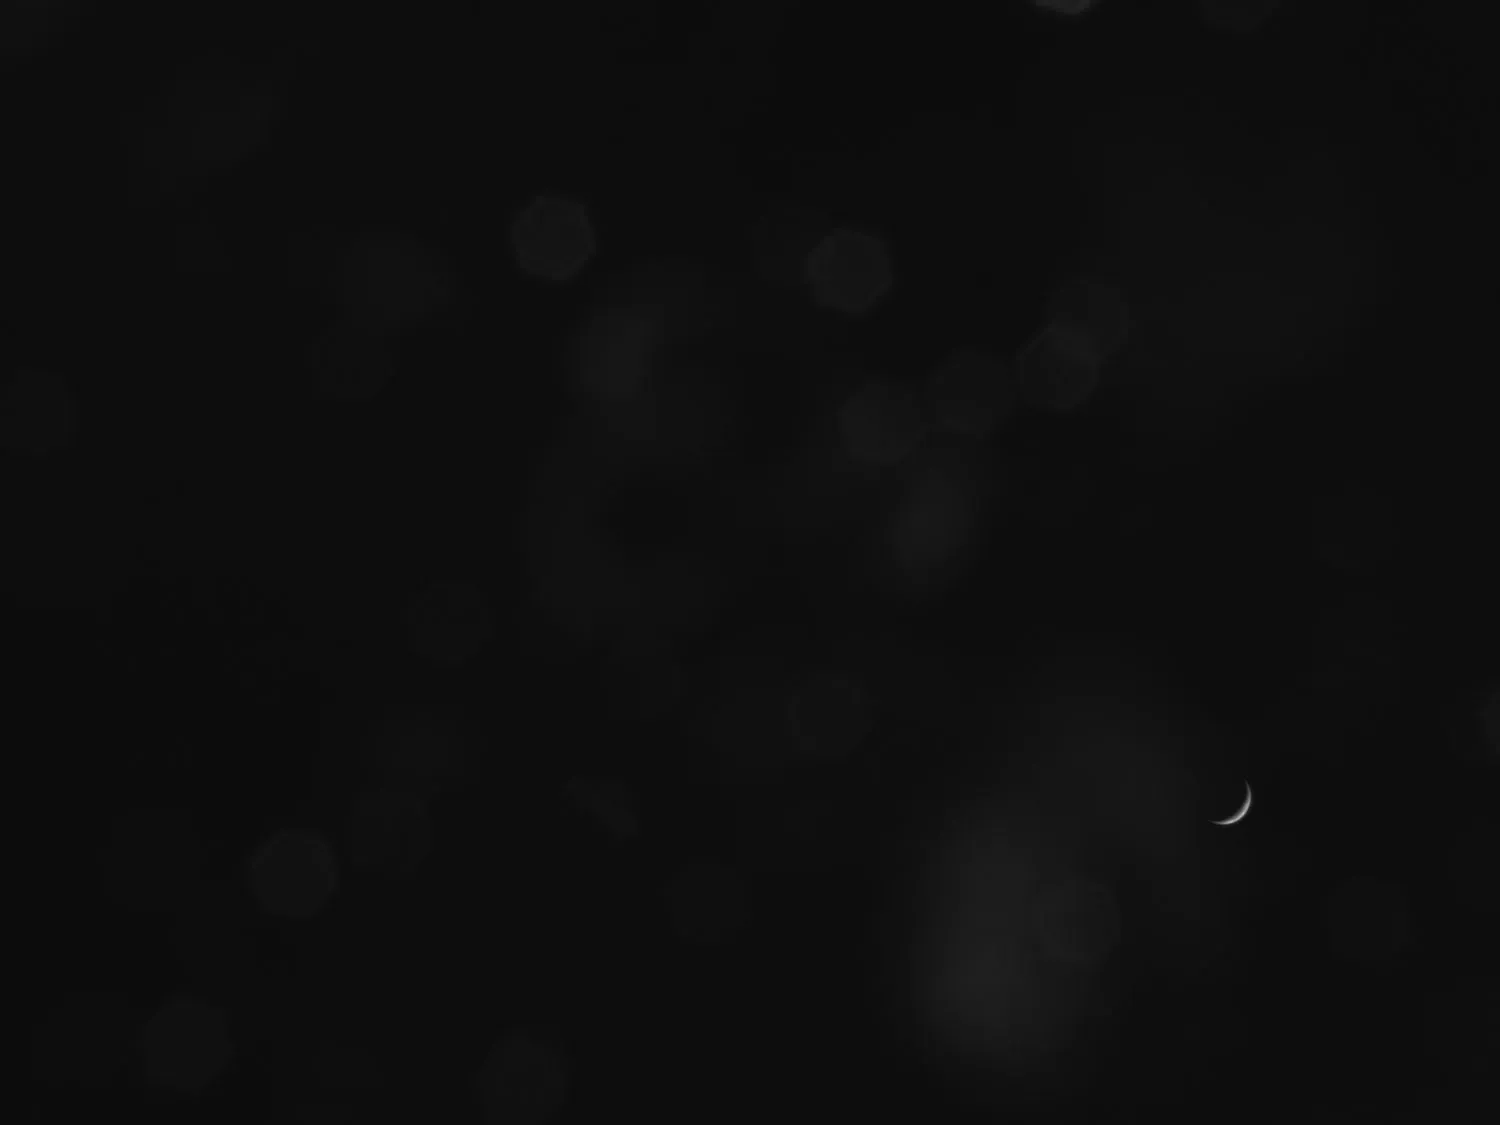 ein ganz schwarzes Bild mit einer schwachen Mondsichel in der unteren rechten Ecke